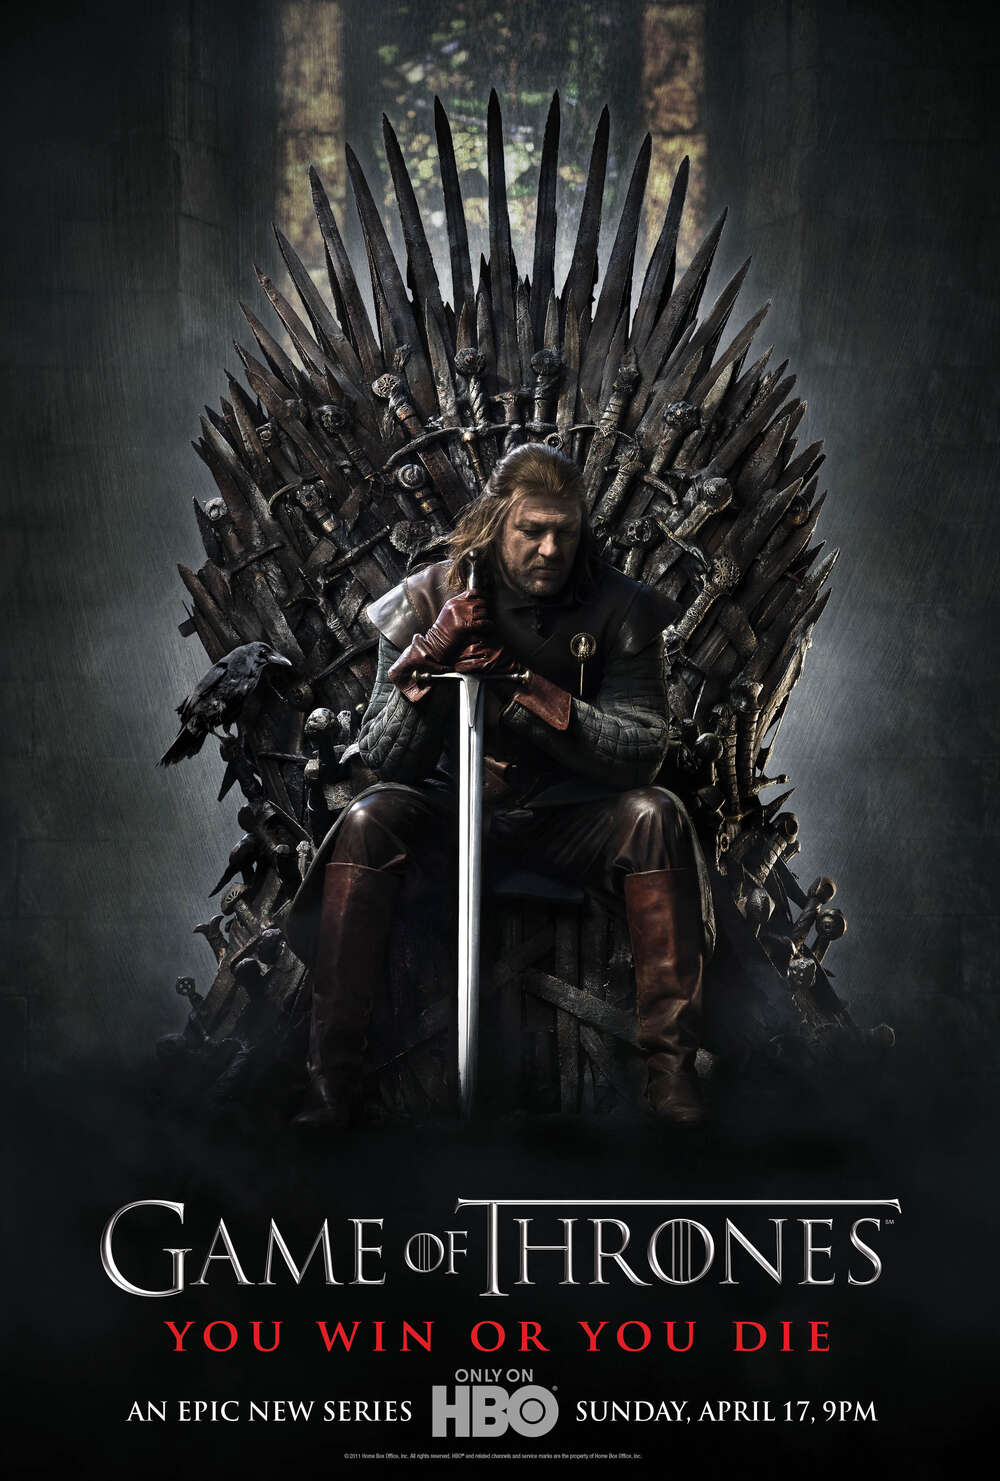 Game of Thrones on kevään piratoiduin TV-sarja - listalla kolme tuoretta nimeä